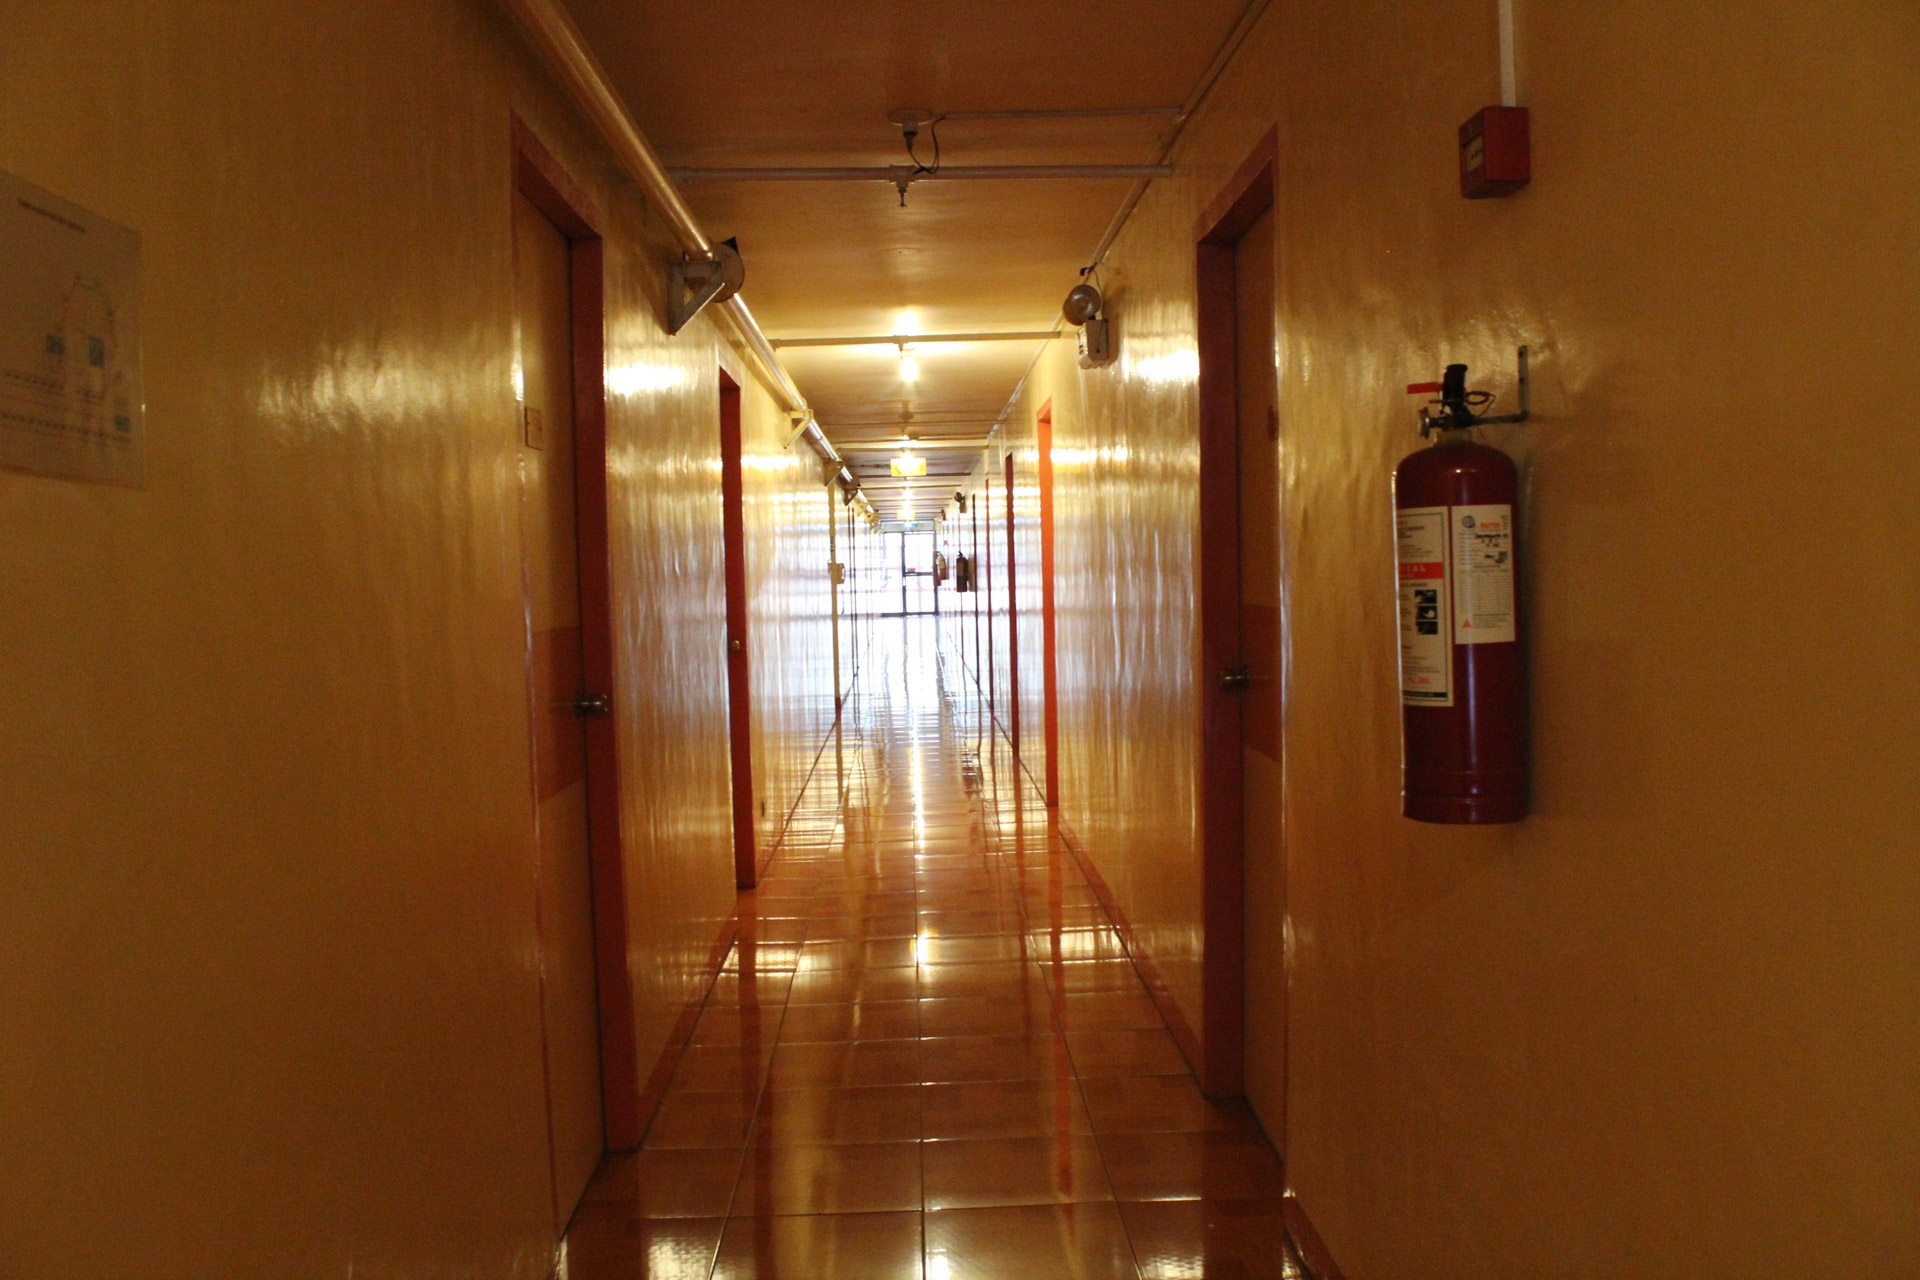 the golden hallway